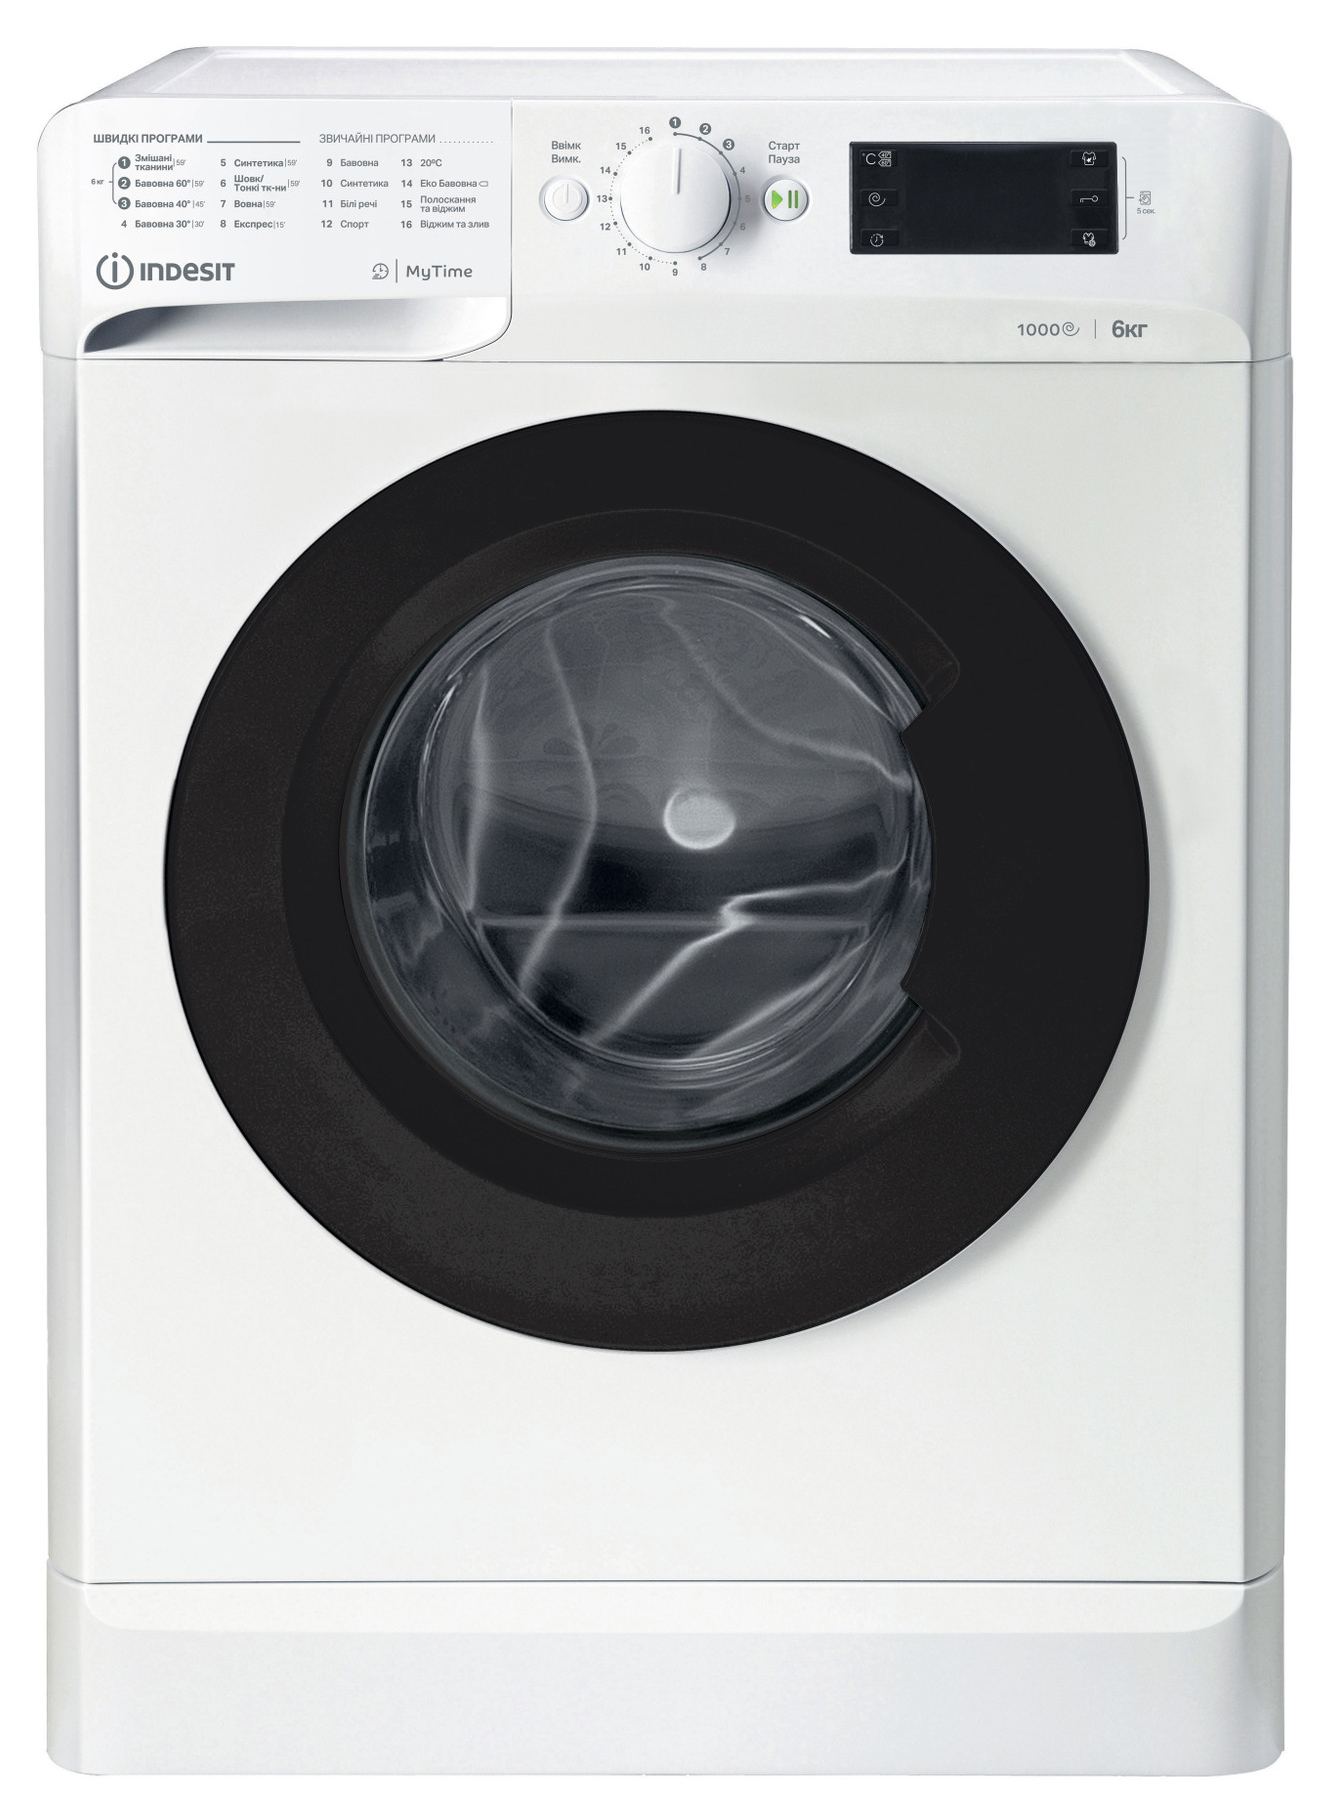 Характеристики стиральная машина на 1000 оборотов Indesit OMTWSE61051WKUA